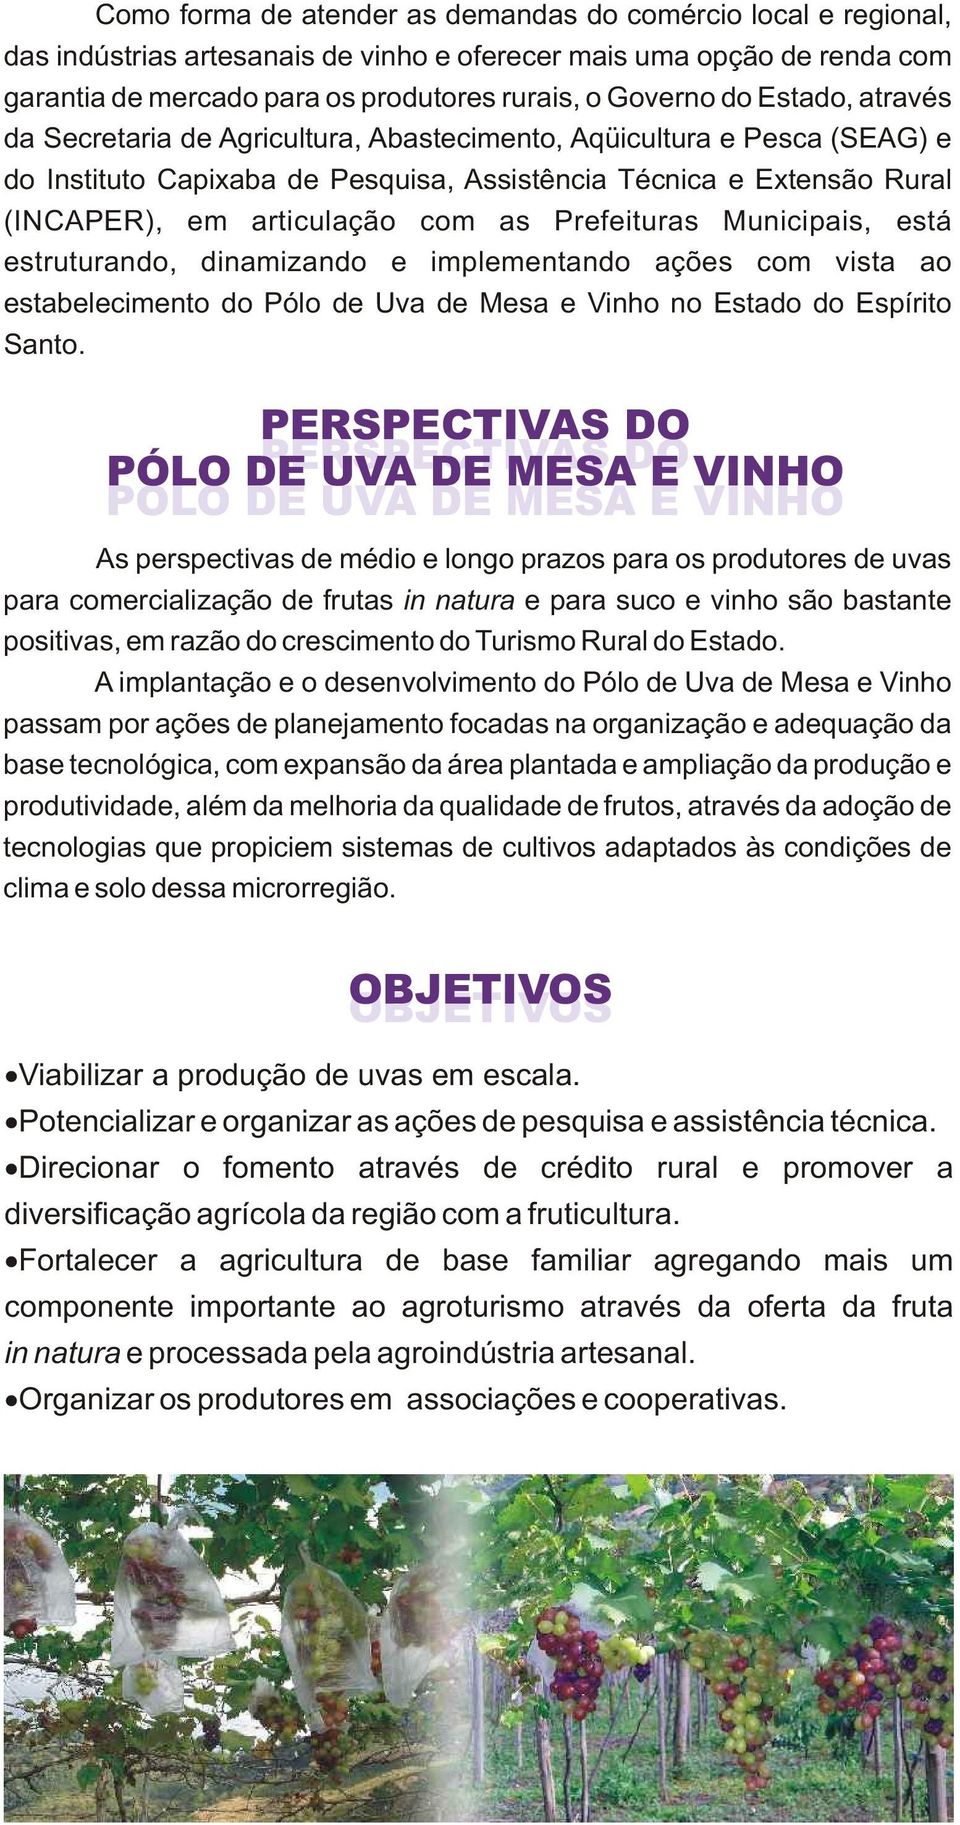 Prefeituras Municipais, está estruturando, dinamizando e implementando ações com vista ao estabelecimento do Pólo de Uva de Mesa e Vinho no Estado do Espírito Santo.